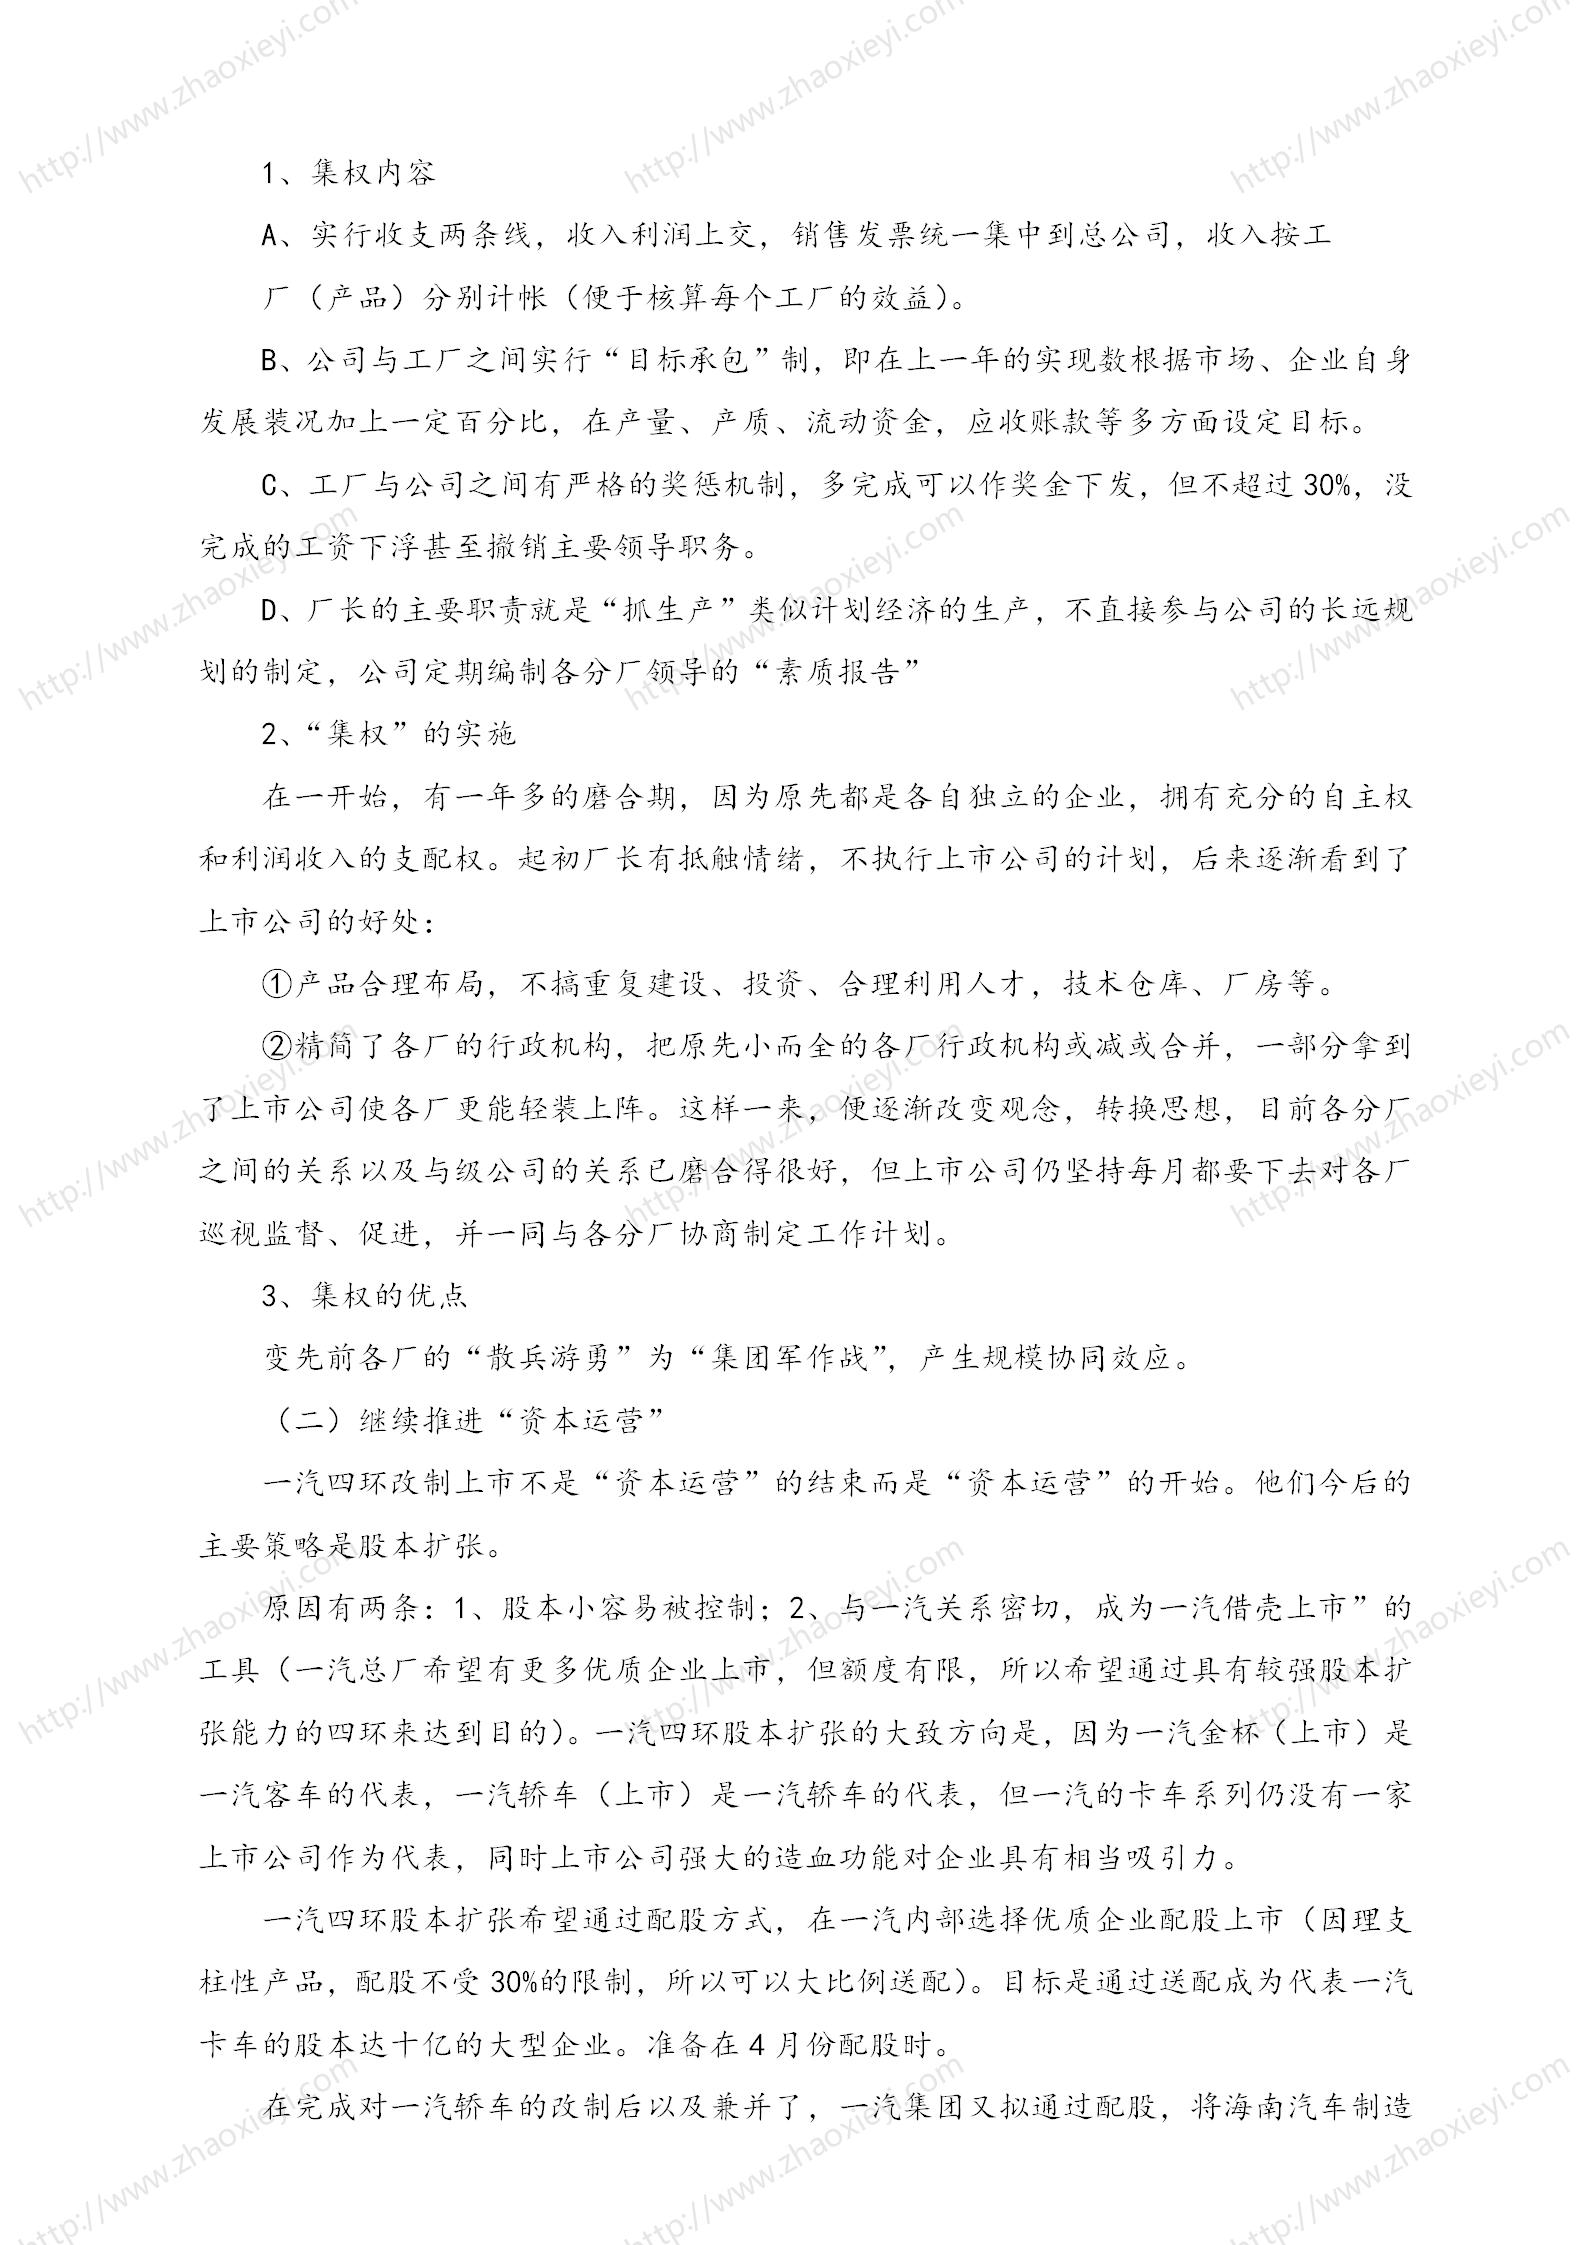 中国企业并购经典案例_177.jpg